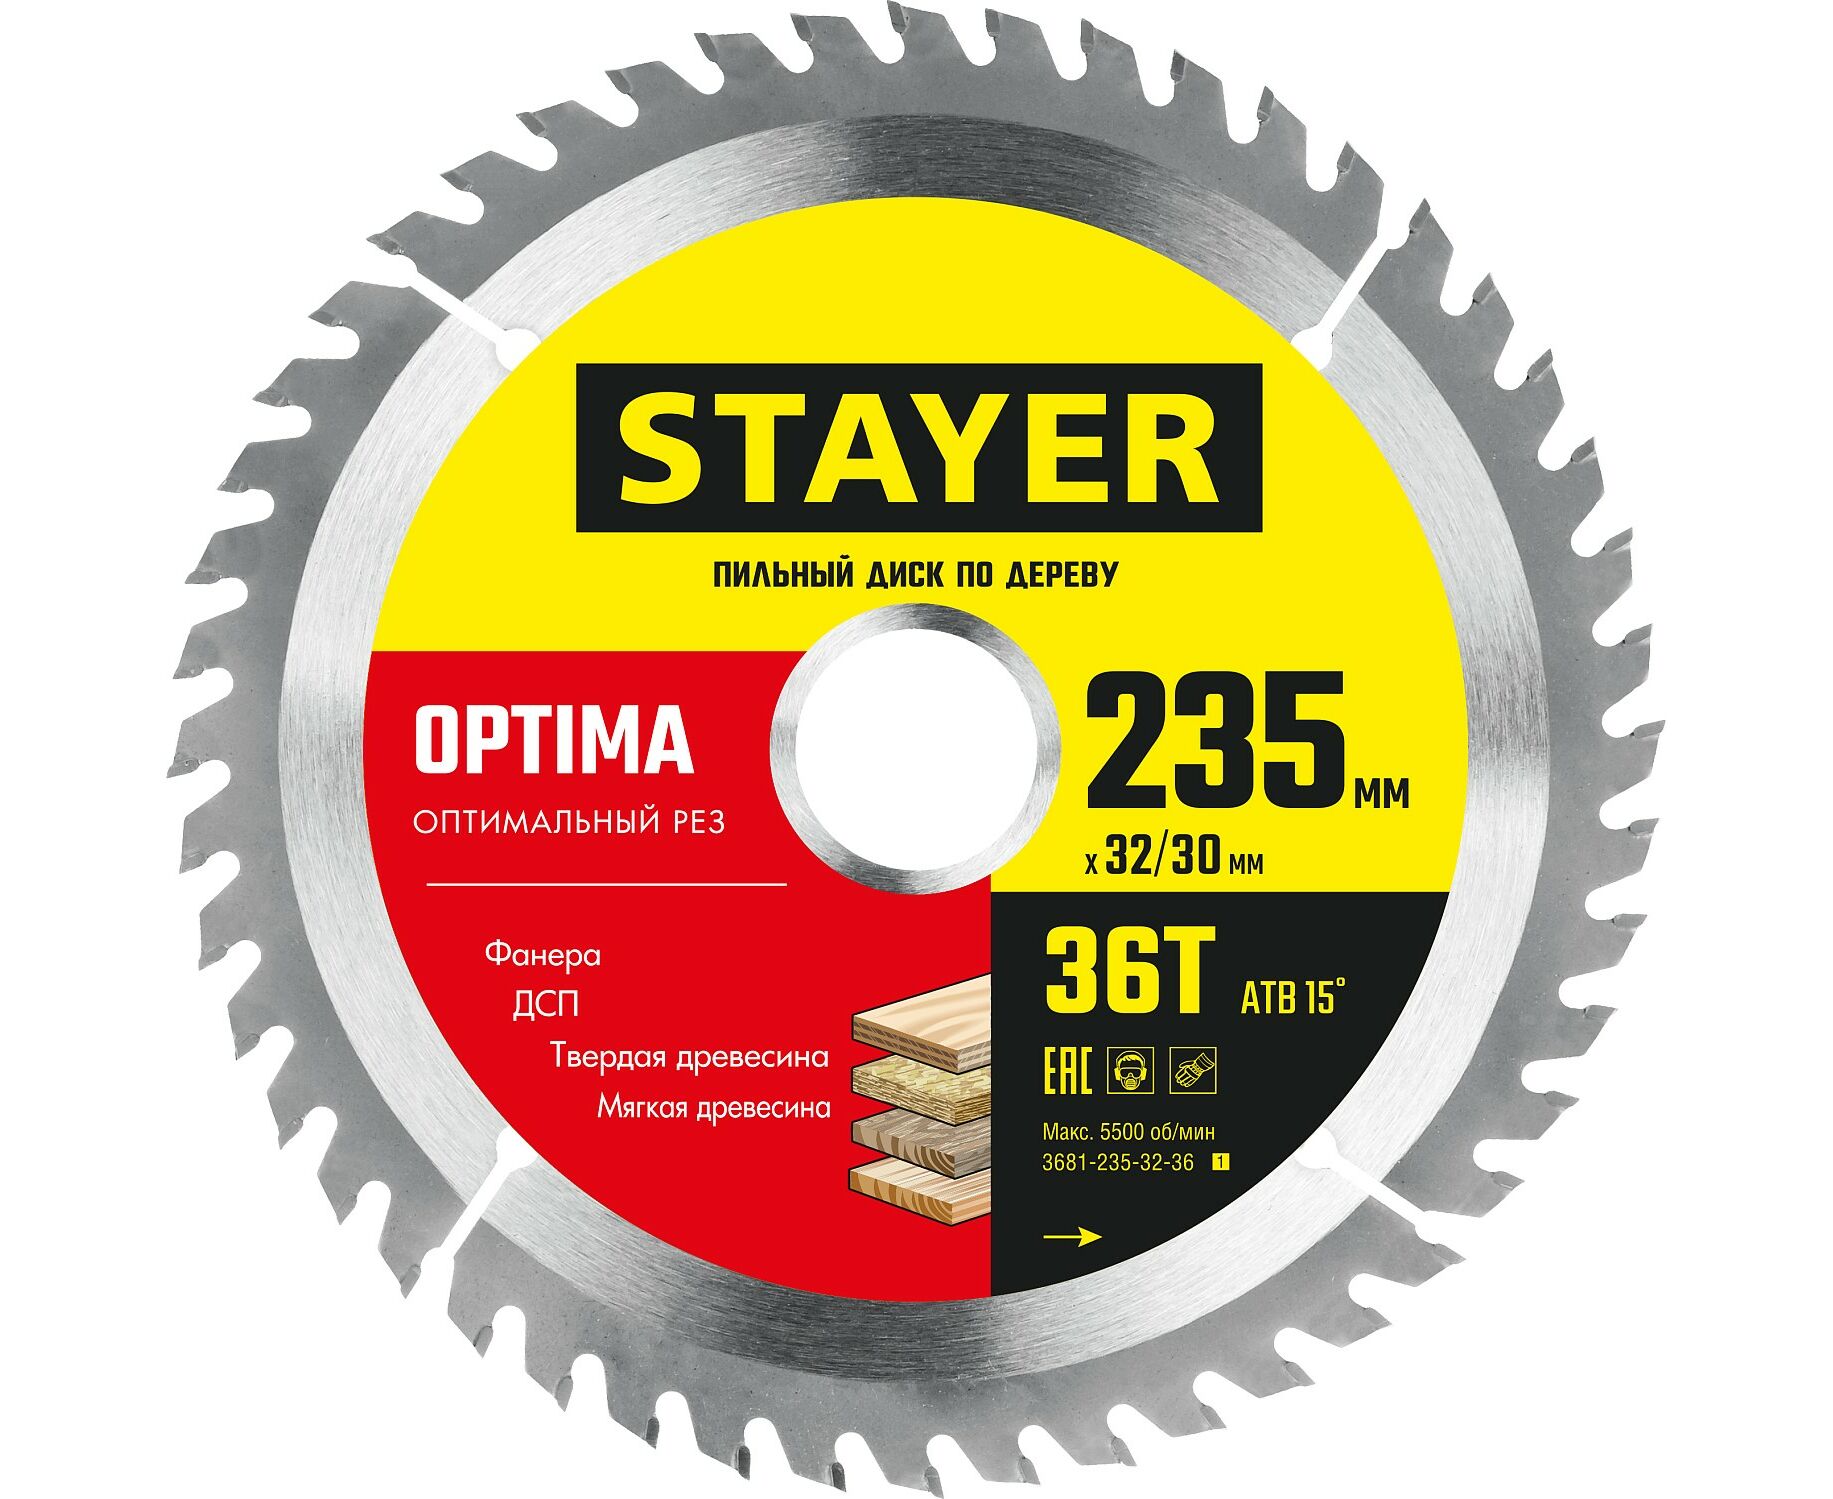 Пильный диск STAYER OPTIMA 235 x 32/30мм 36Т, по дереву, оптимальный рез